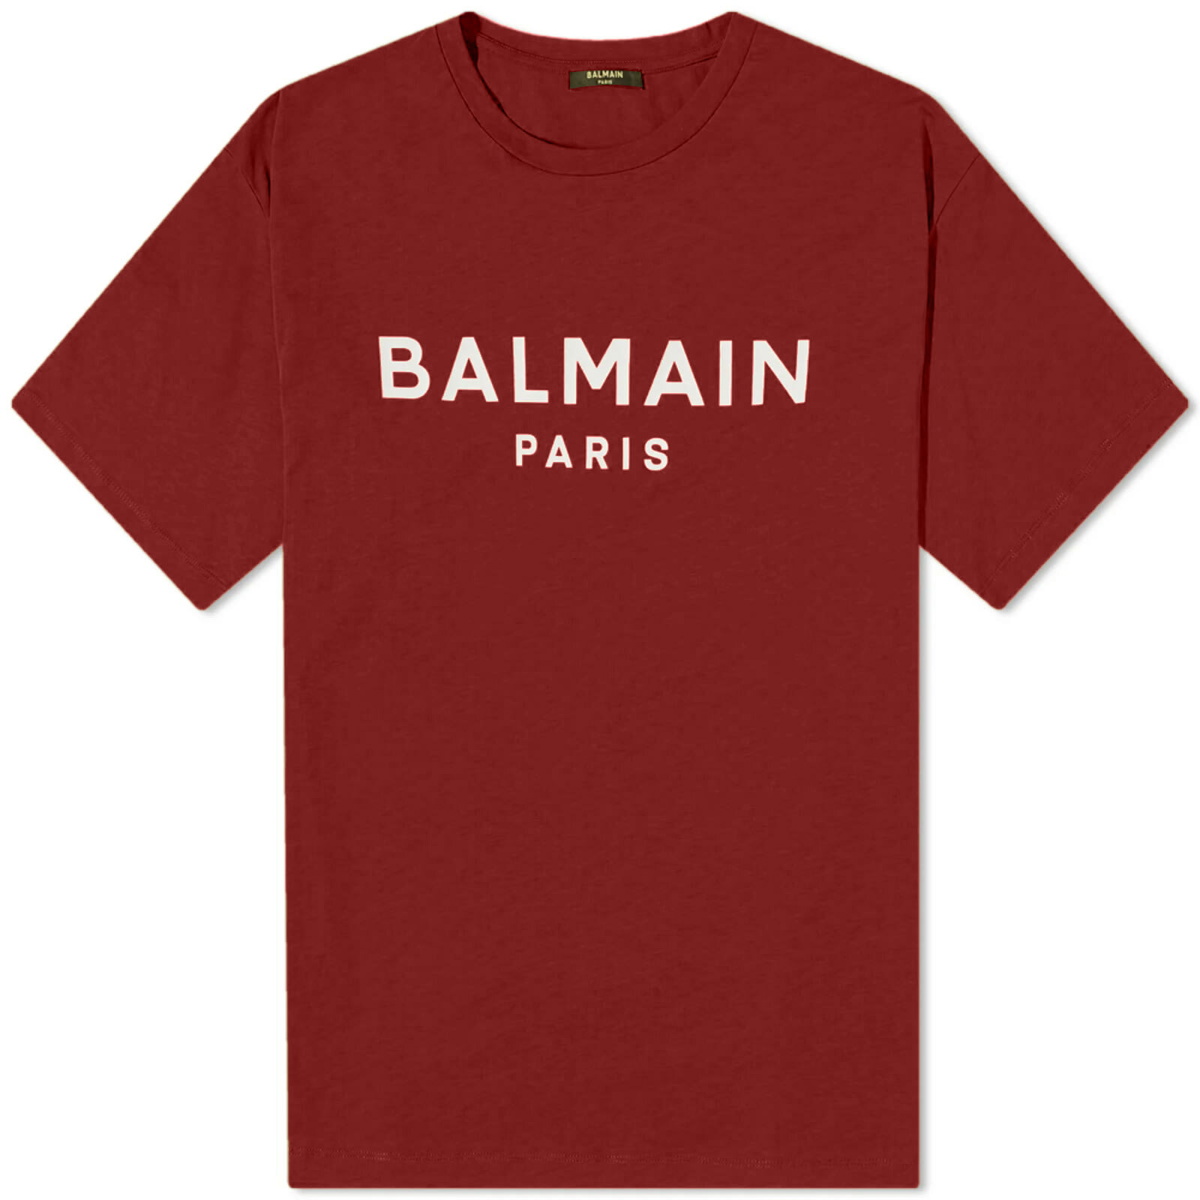 Balmain Men's Paris Logo T-Shirt in Red/White Balmain